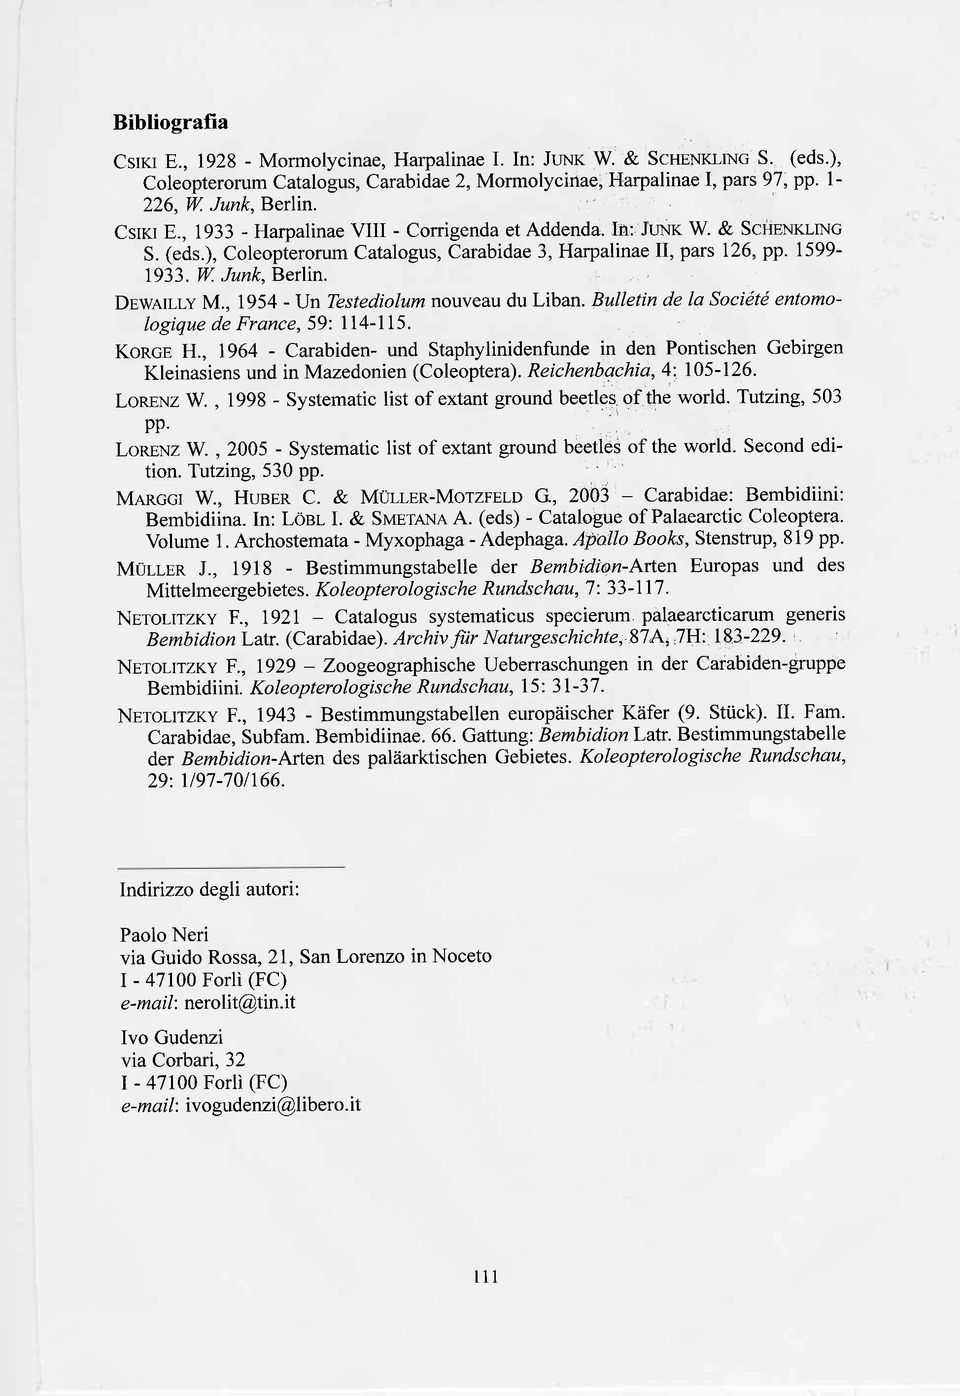 Dr,werr-ly M., 1954 -ljn Testediolum nouveau du Liban. Bulletin de la Société entomologique de France,59: 114-115. KoRcp H.